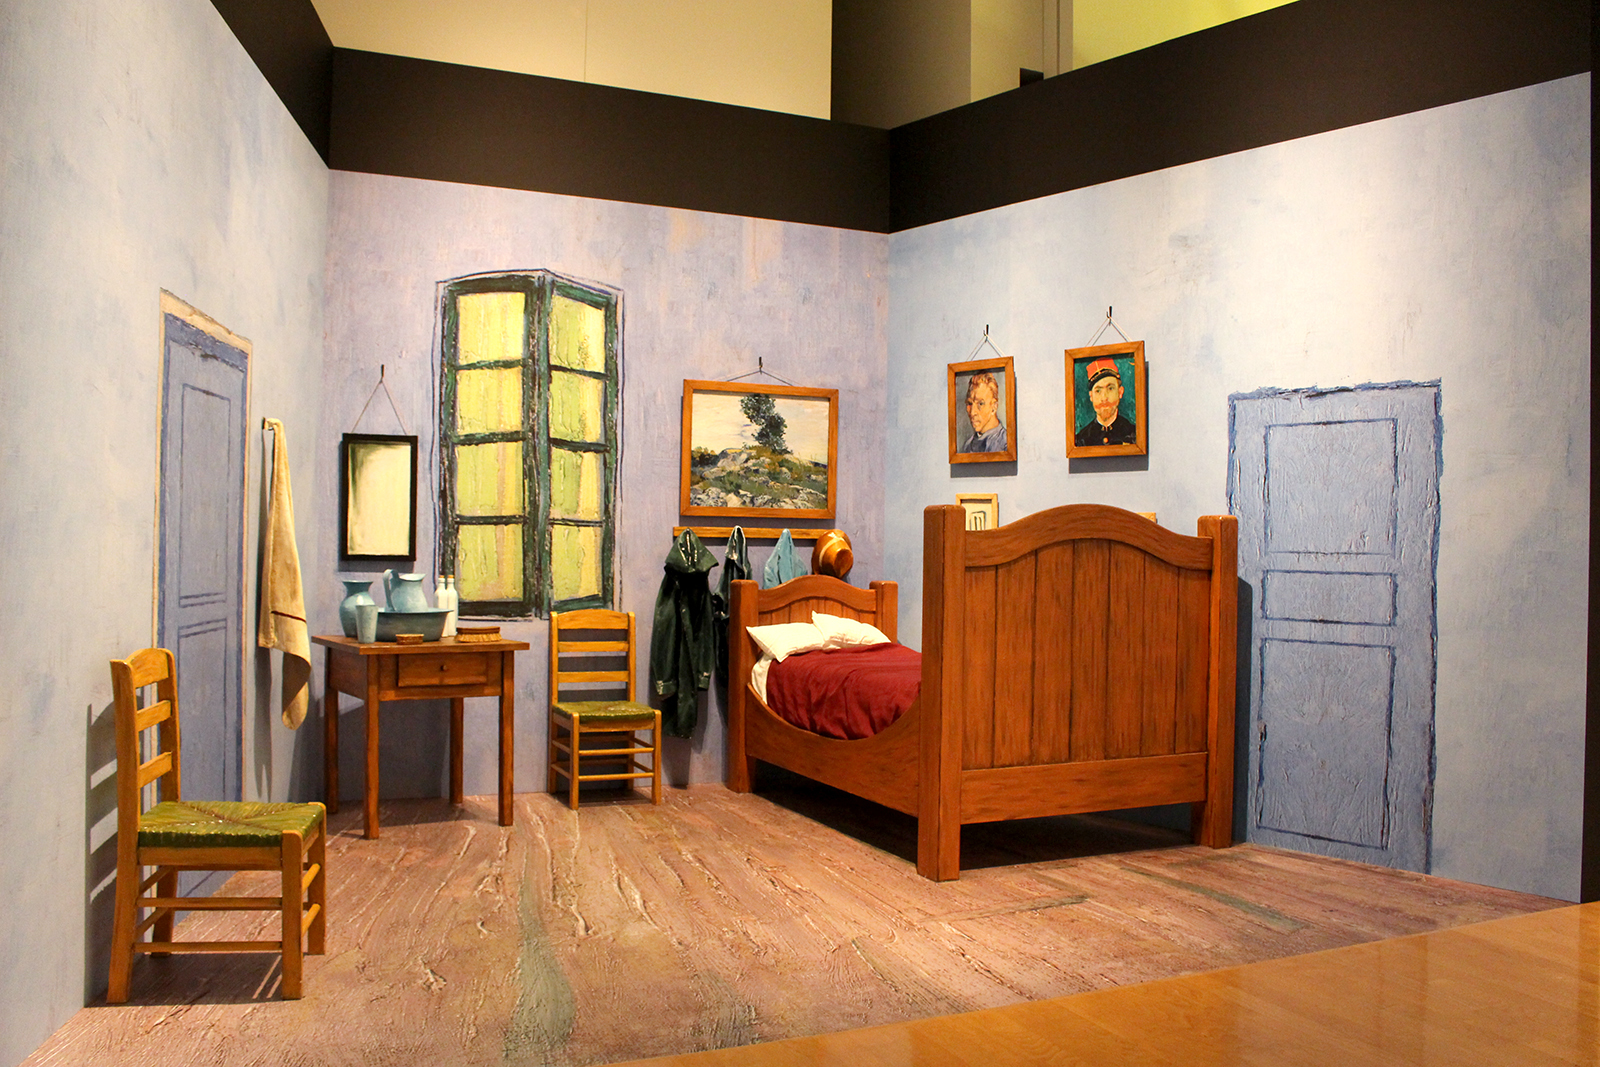 アルルの「黄色い家」のゴッホの寝室の再現。中に入り込んで写真撮影が可能